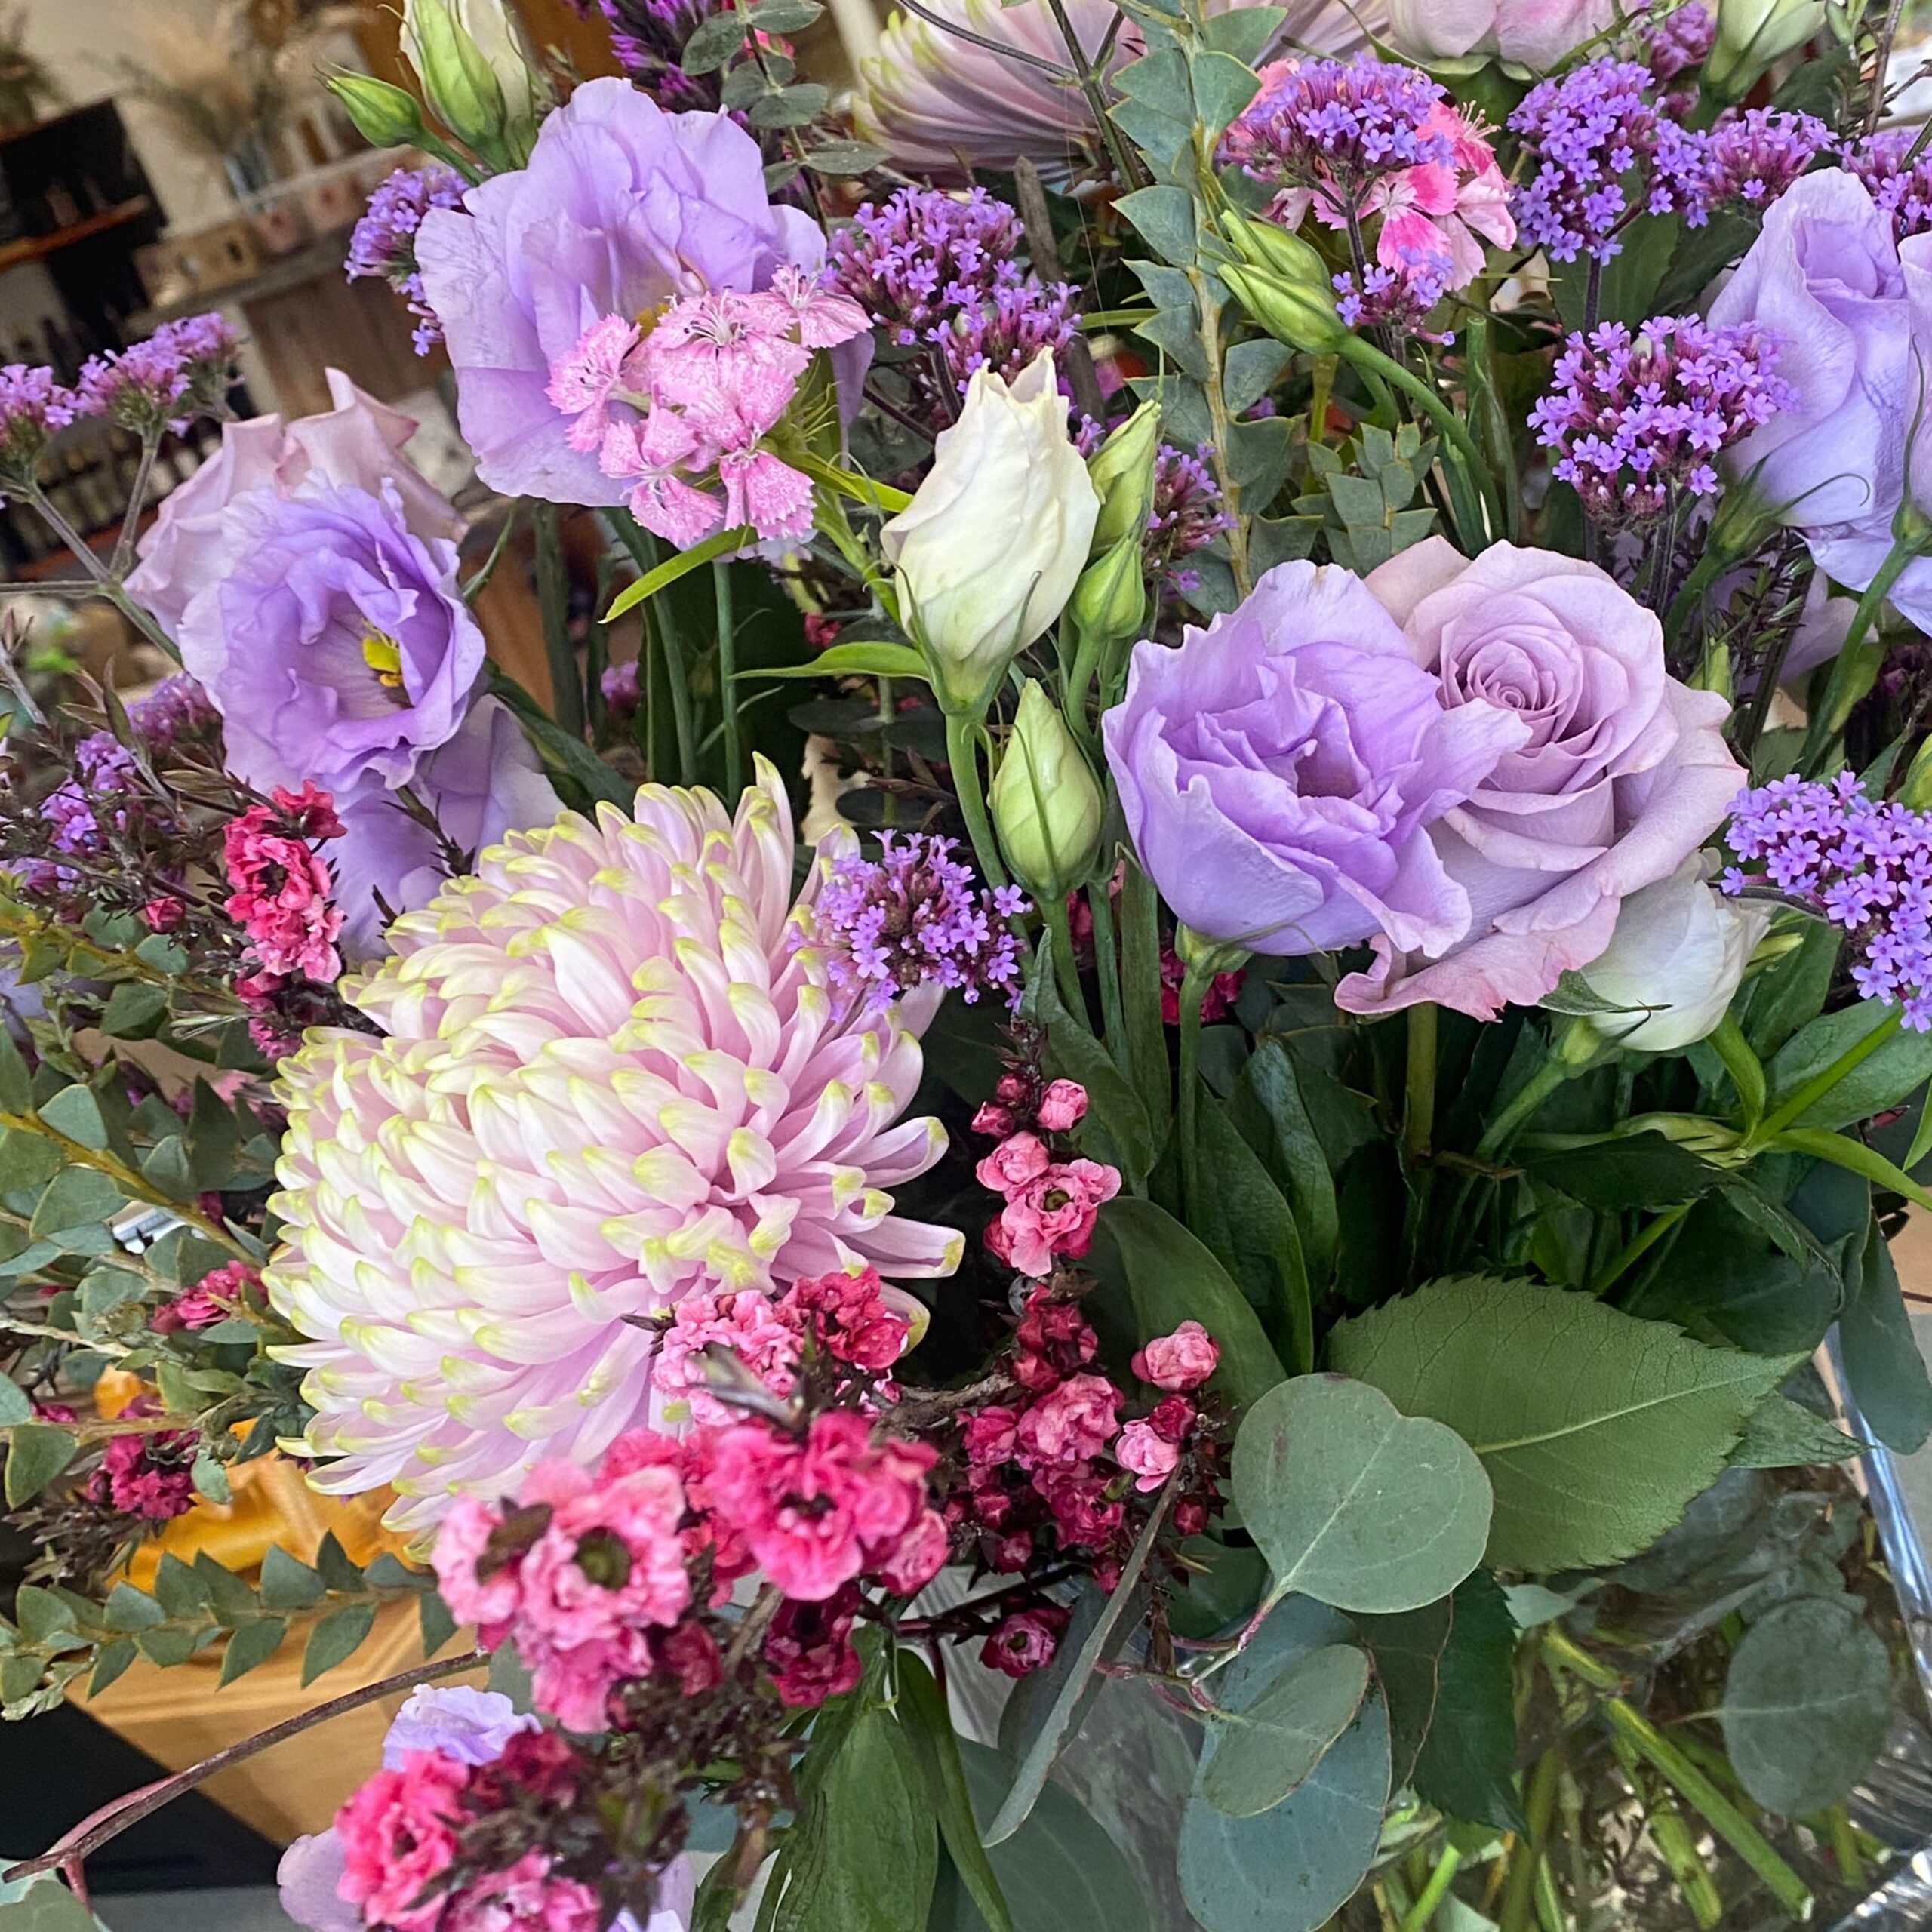 Florist Choice Arrangement with Vase